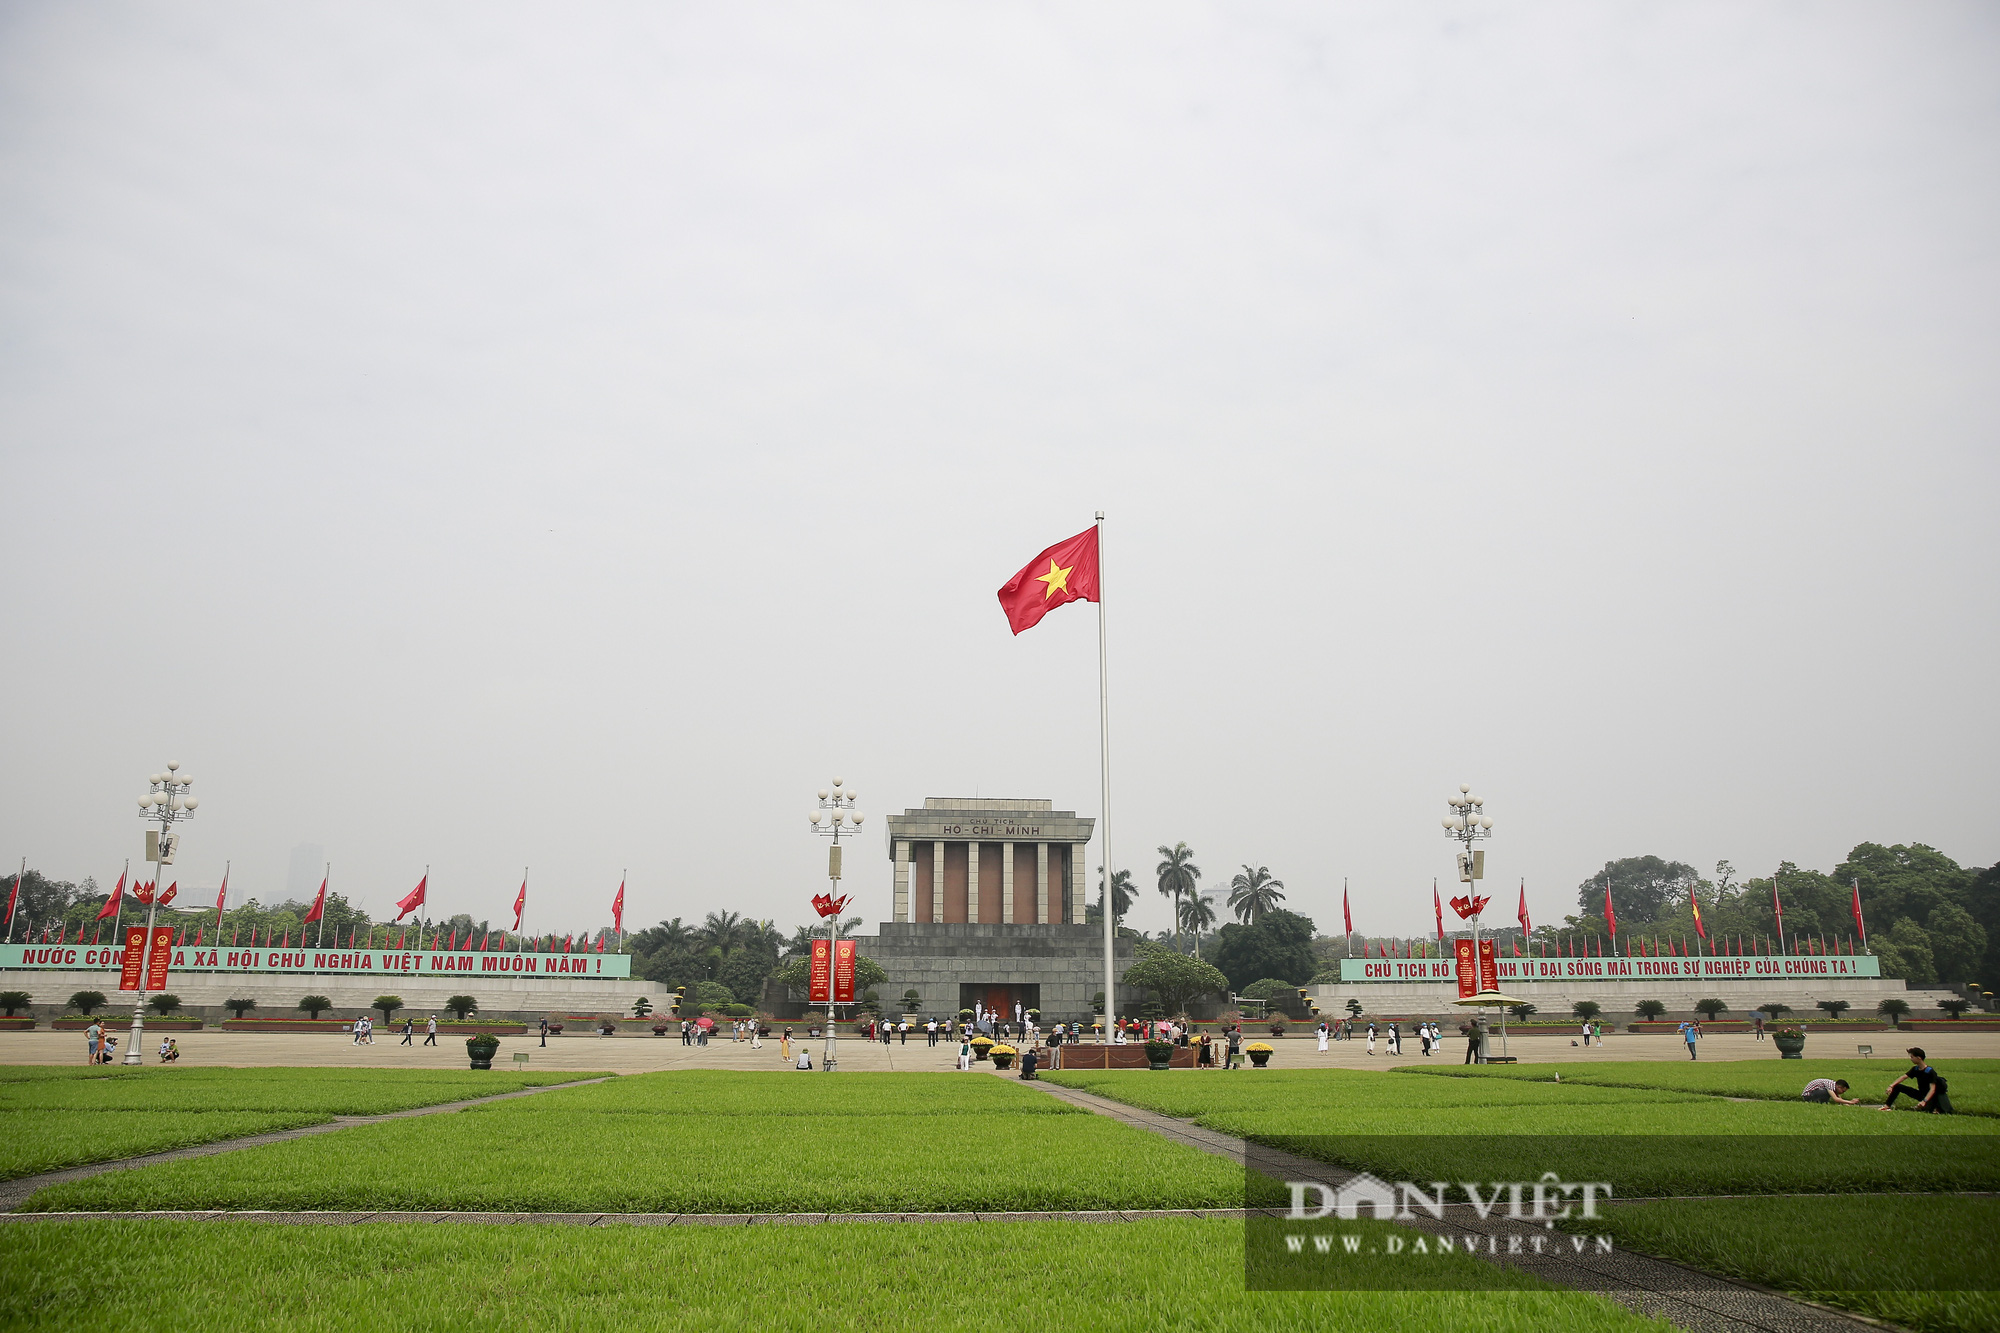 Bất ngờ lượng du khách tham quan lăng Bác, bảo tàng tại Hà Nội trong sáng 30/4 - Ảnh 1.